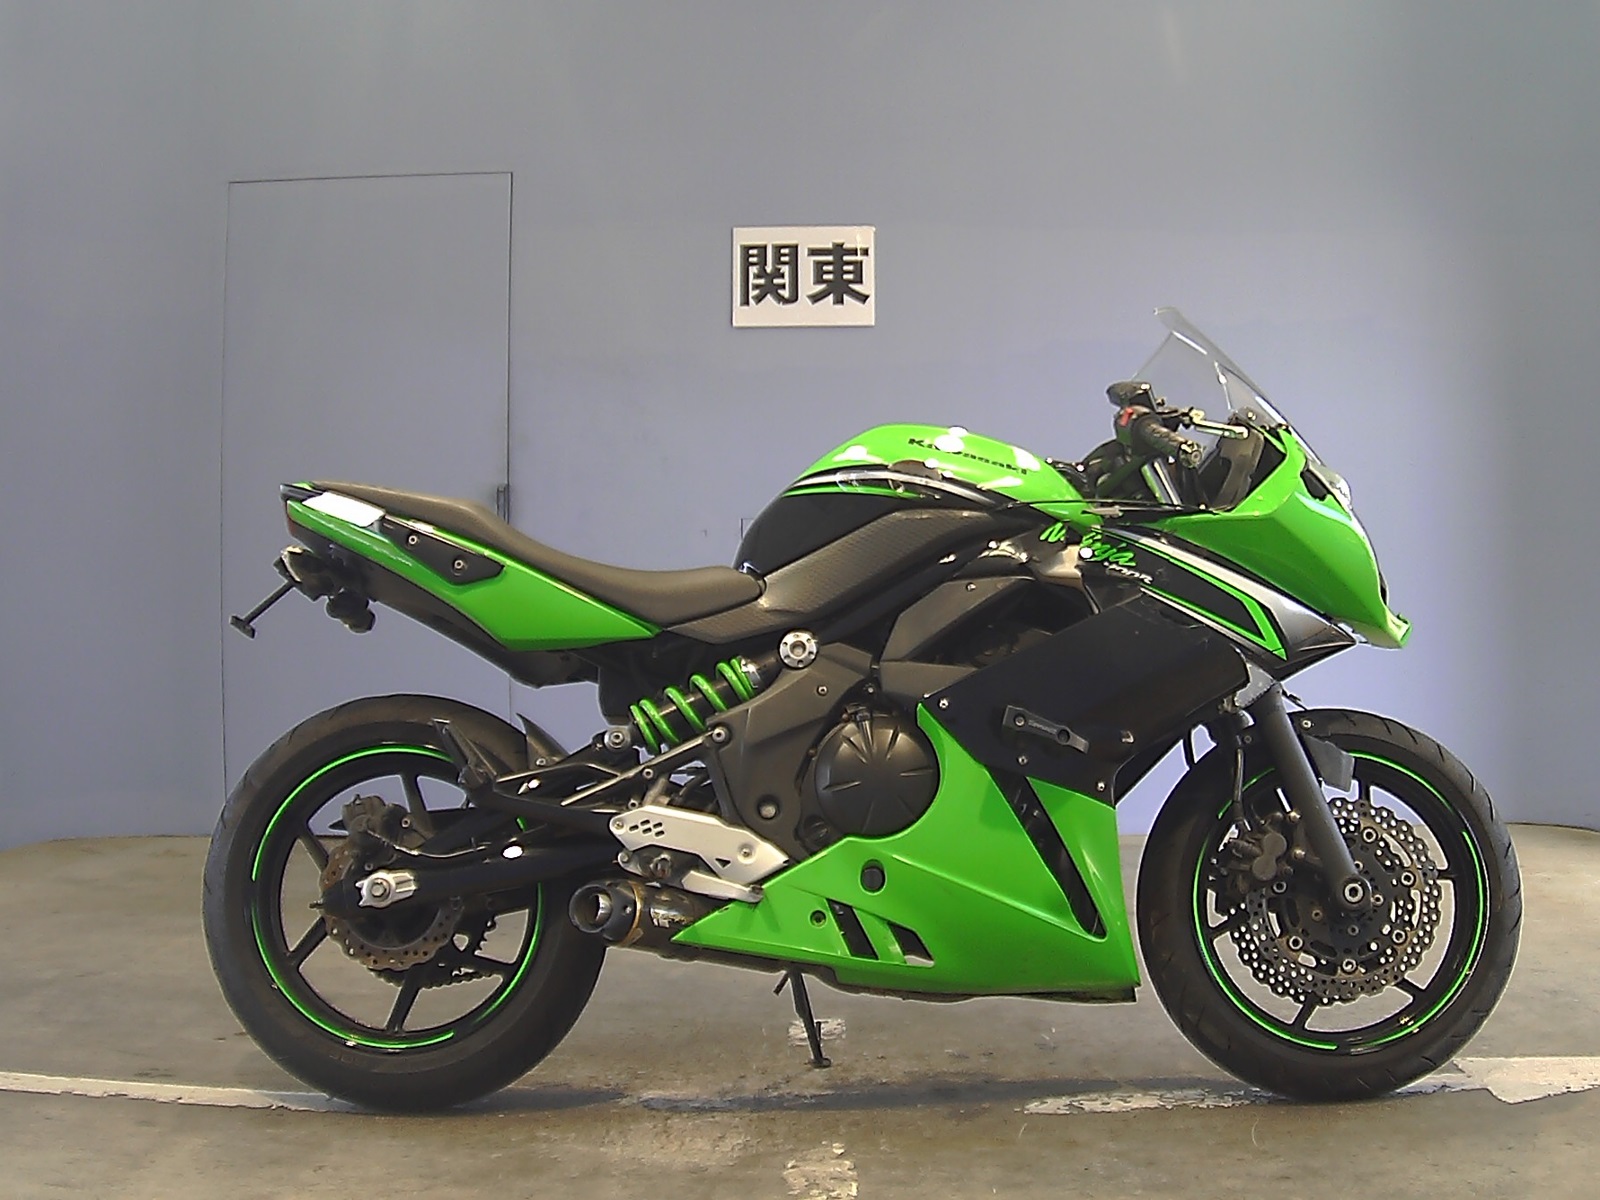 Мотоцикл Kawasaki Ninja (Кавасаки Ниндзя) 250R — интересный мотоцикл для начинающих